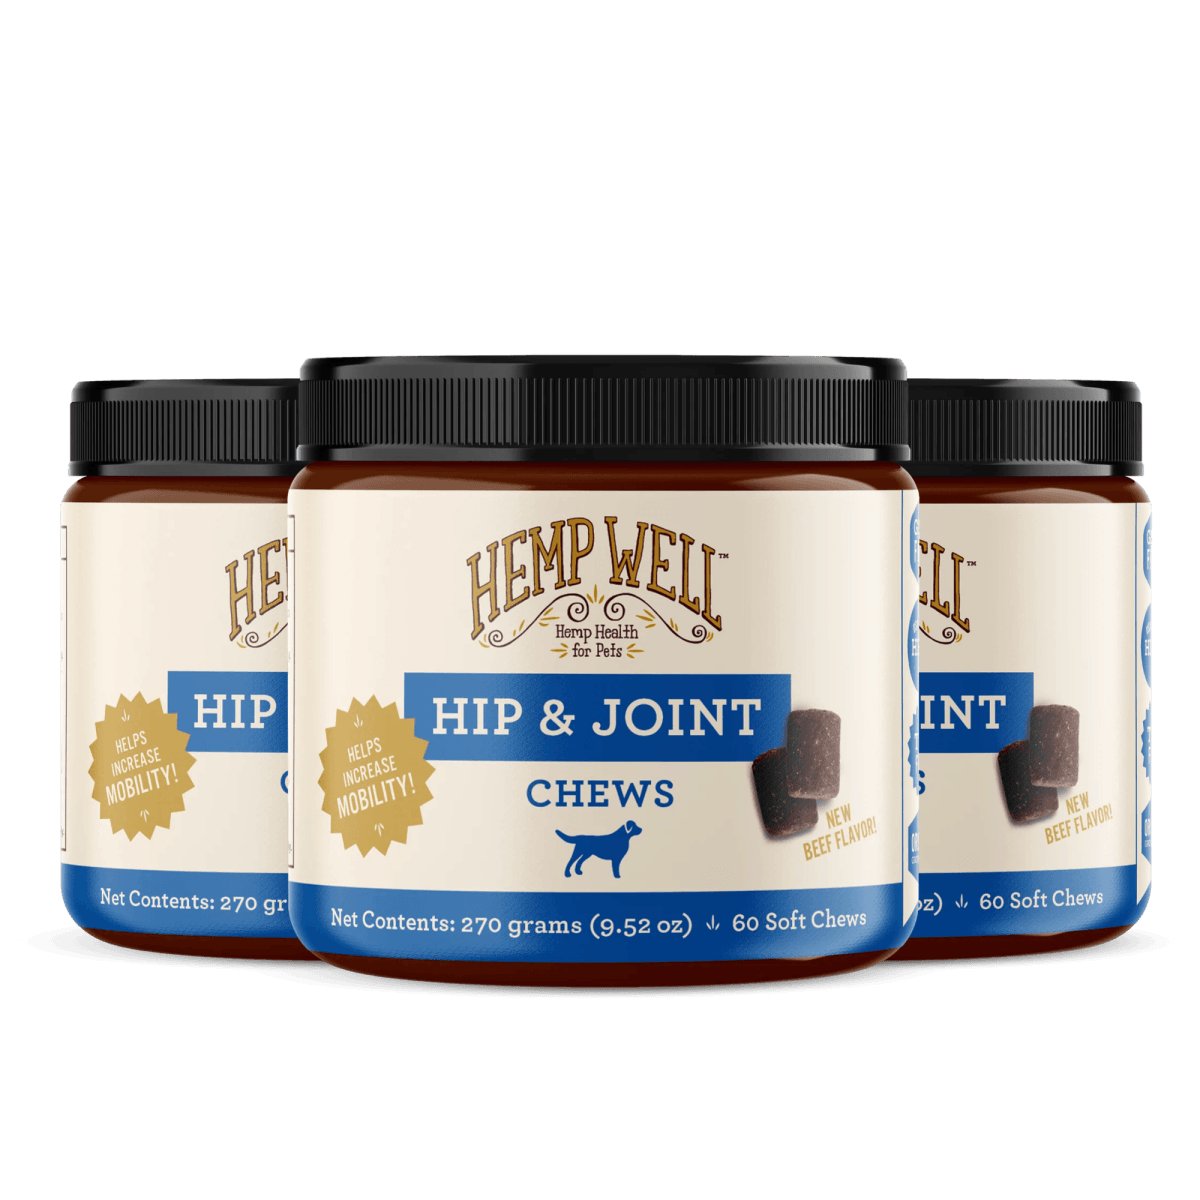 Hip & Joint Dog Soft Chews - Hemp Well